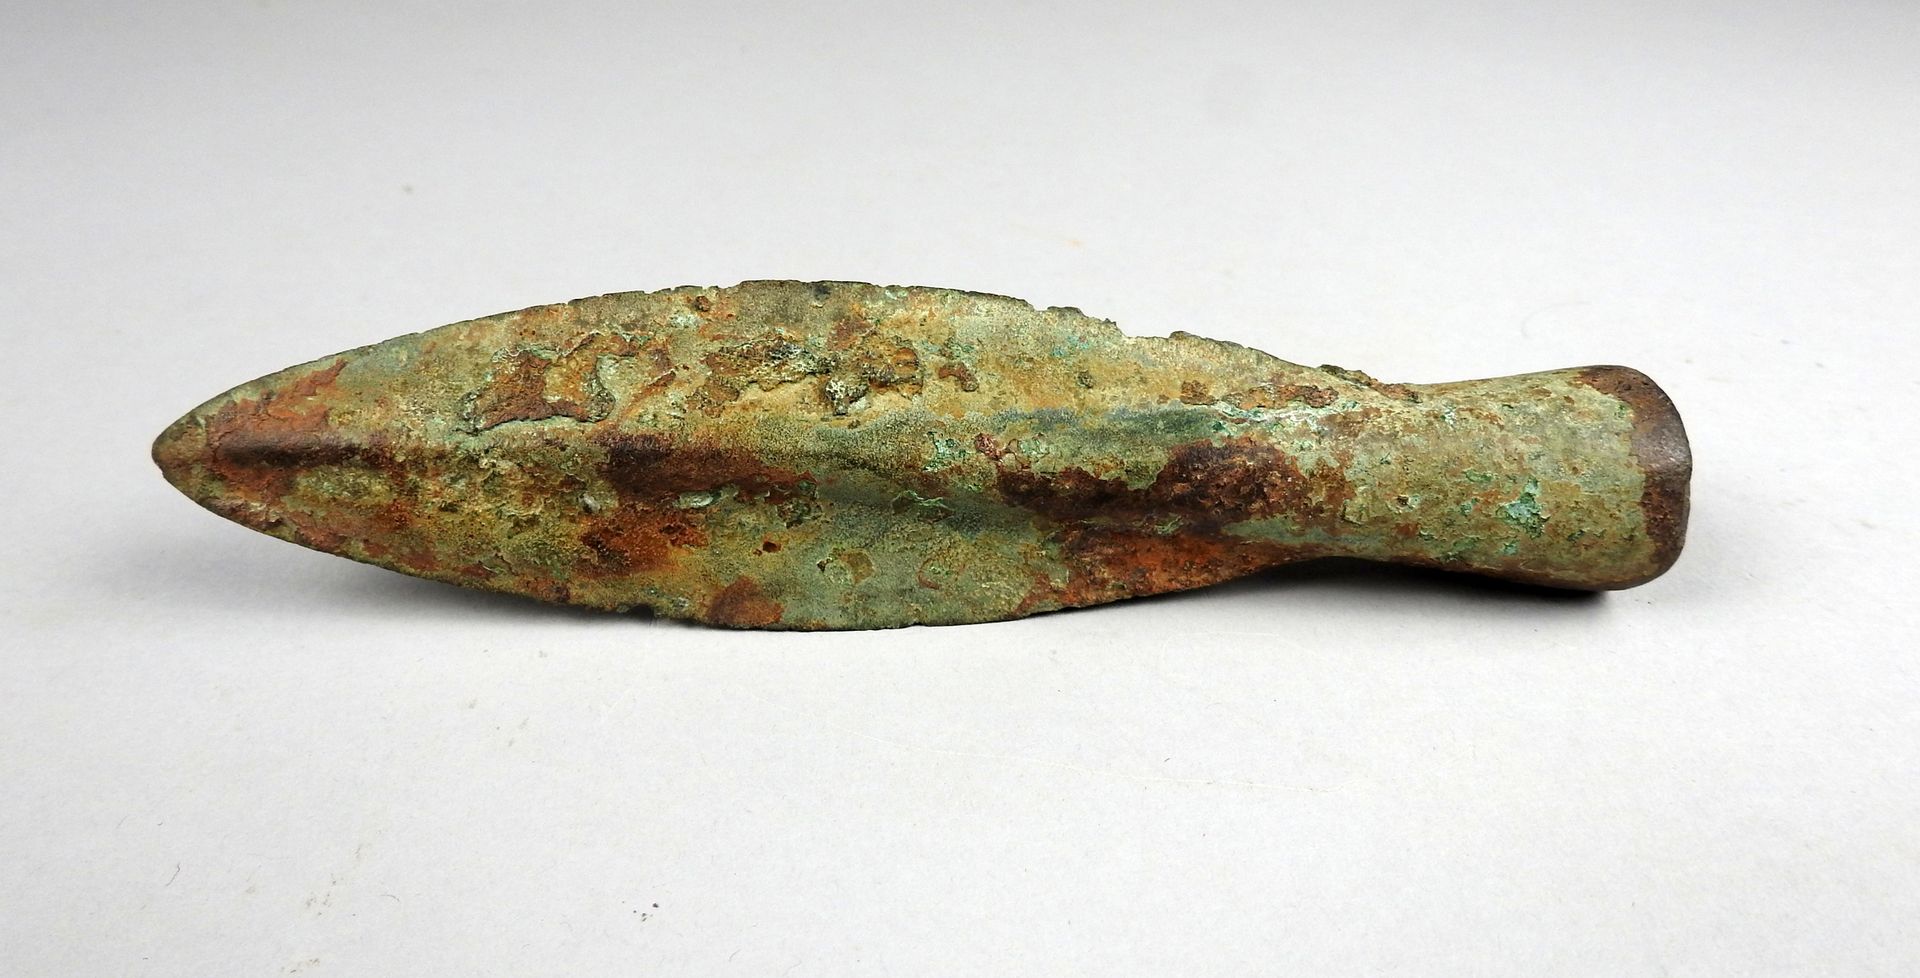 Null 重要的带插座的矛头

前19世纪某省著名人士的收藏

青铜15.8厘米

青铜时代晚期